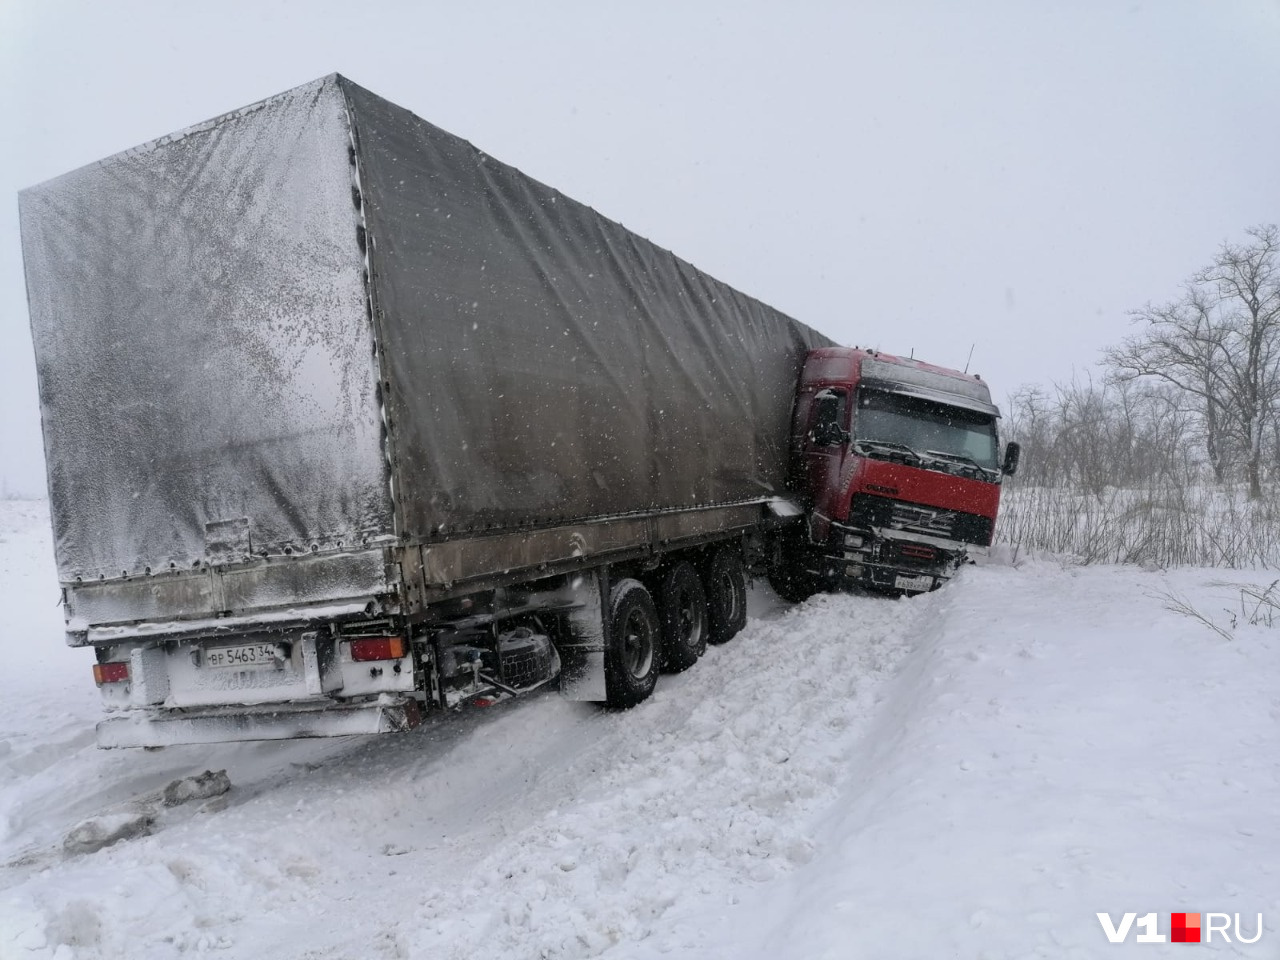 Авария произошла в Суровикинском районе